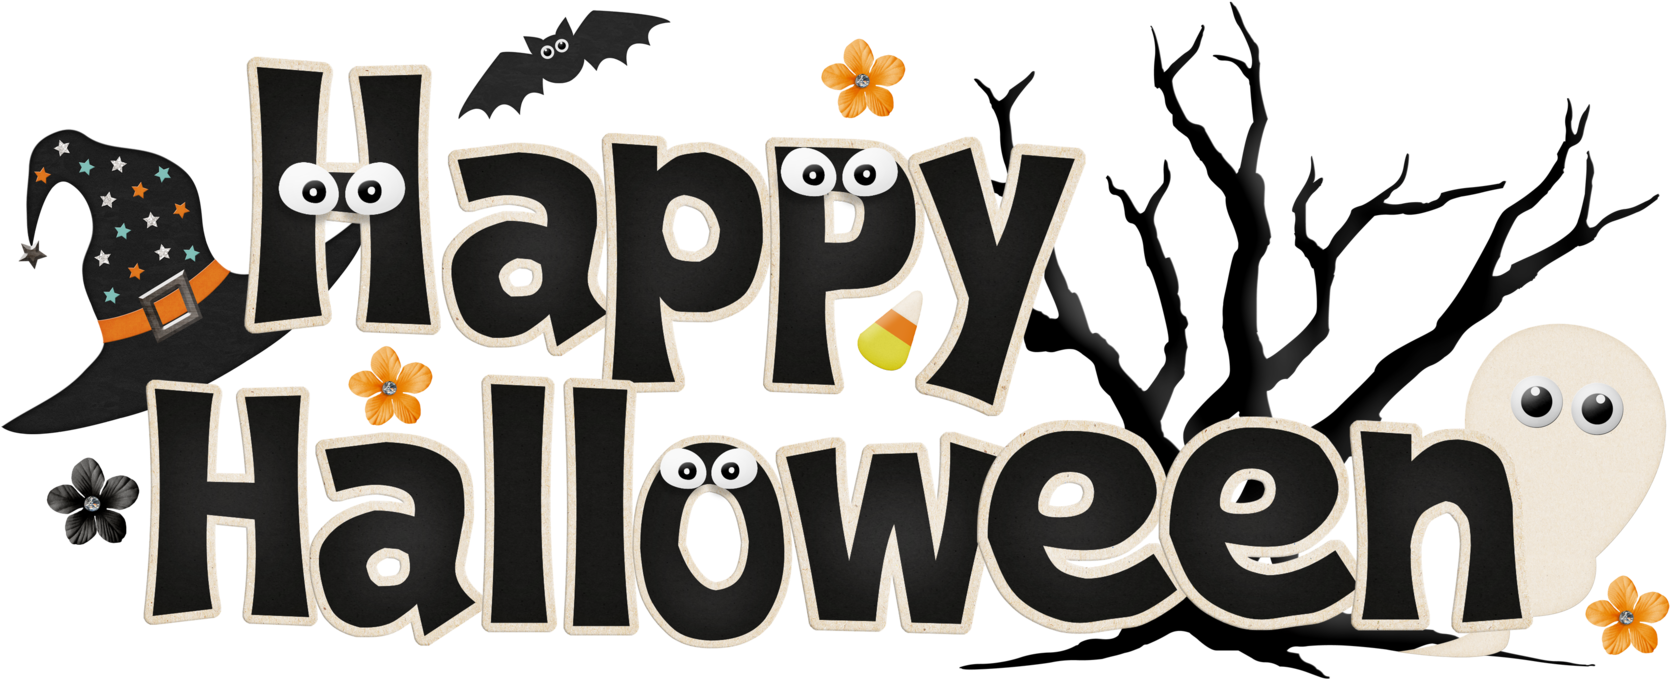 School - Happy Halloween Free Clip Art (1715x719)